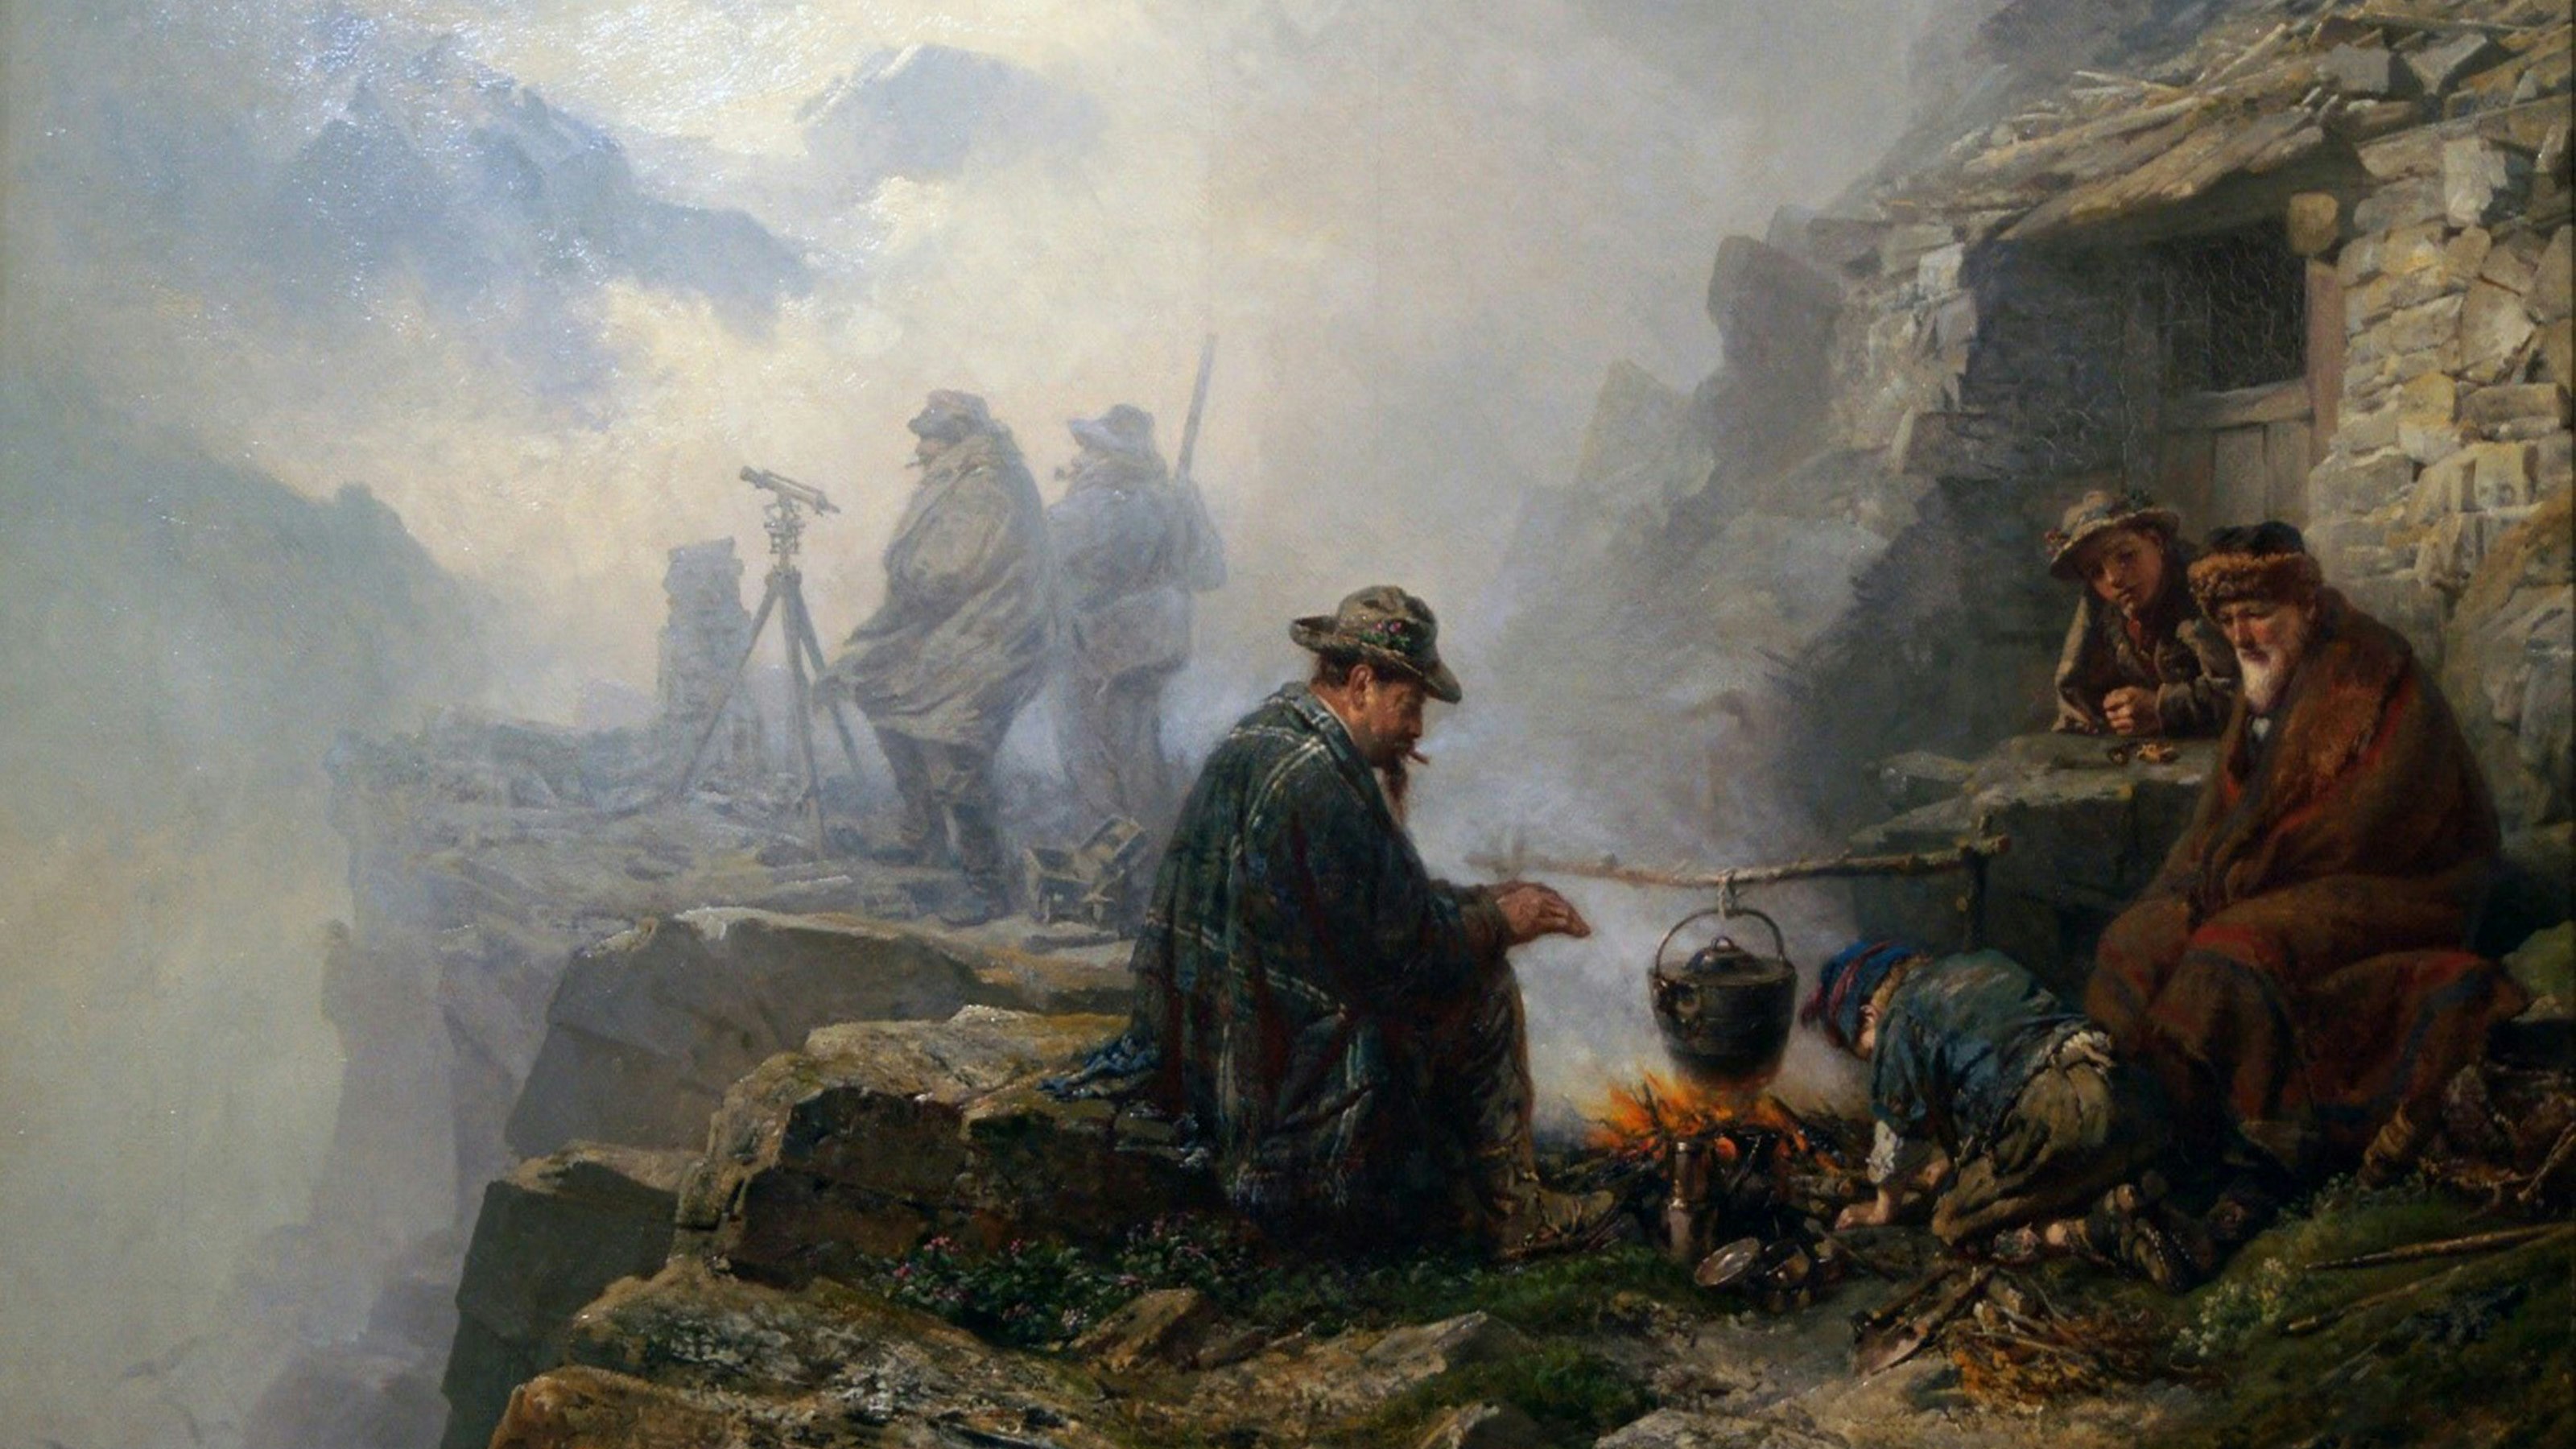 Das Gemälde zeigt vier Personen, die sich um ein Lagerfeuer in gebirgigem Gelände gesellen. Im Hintergrund stehen zwei Männer hinter einem Theodolit im Nebel.